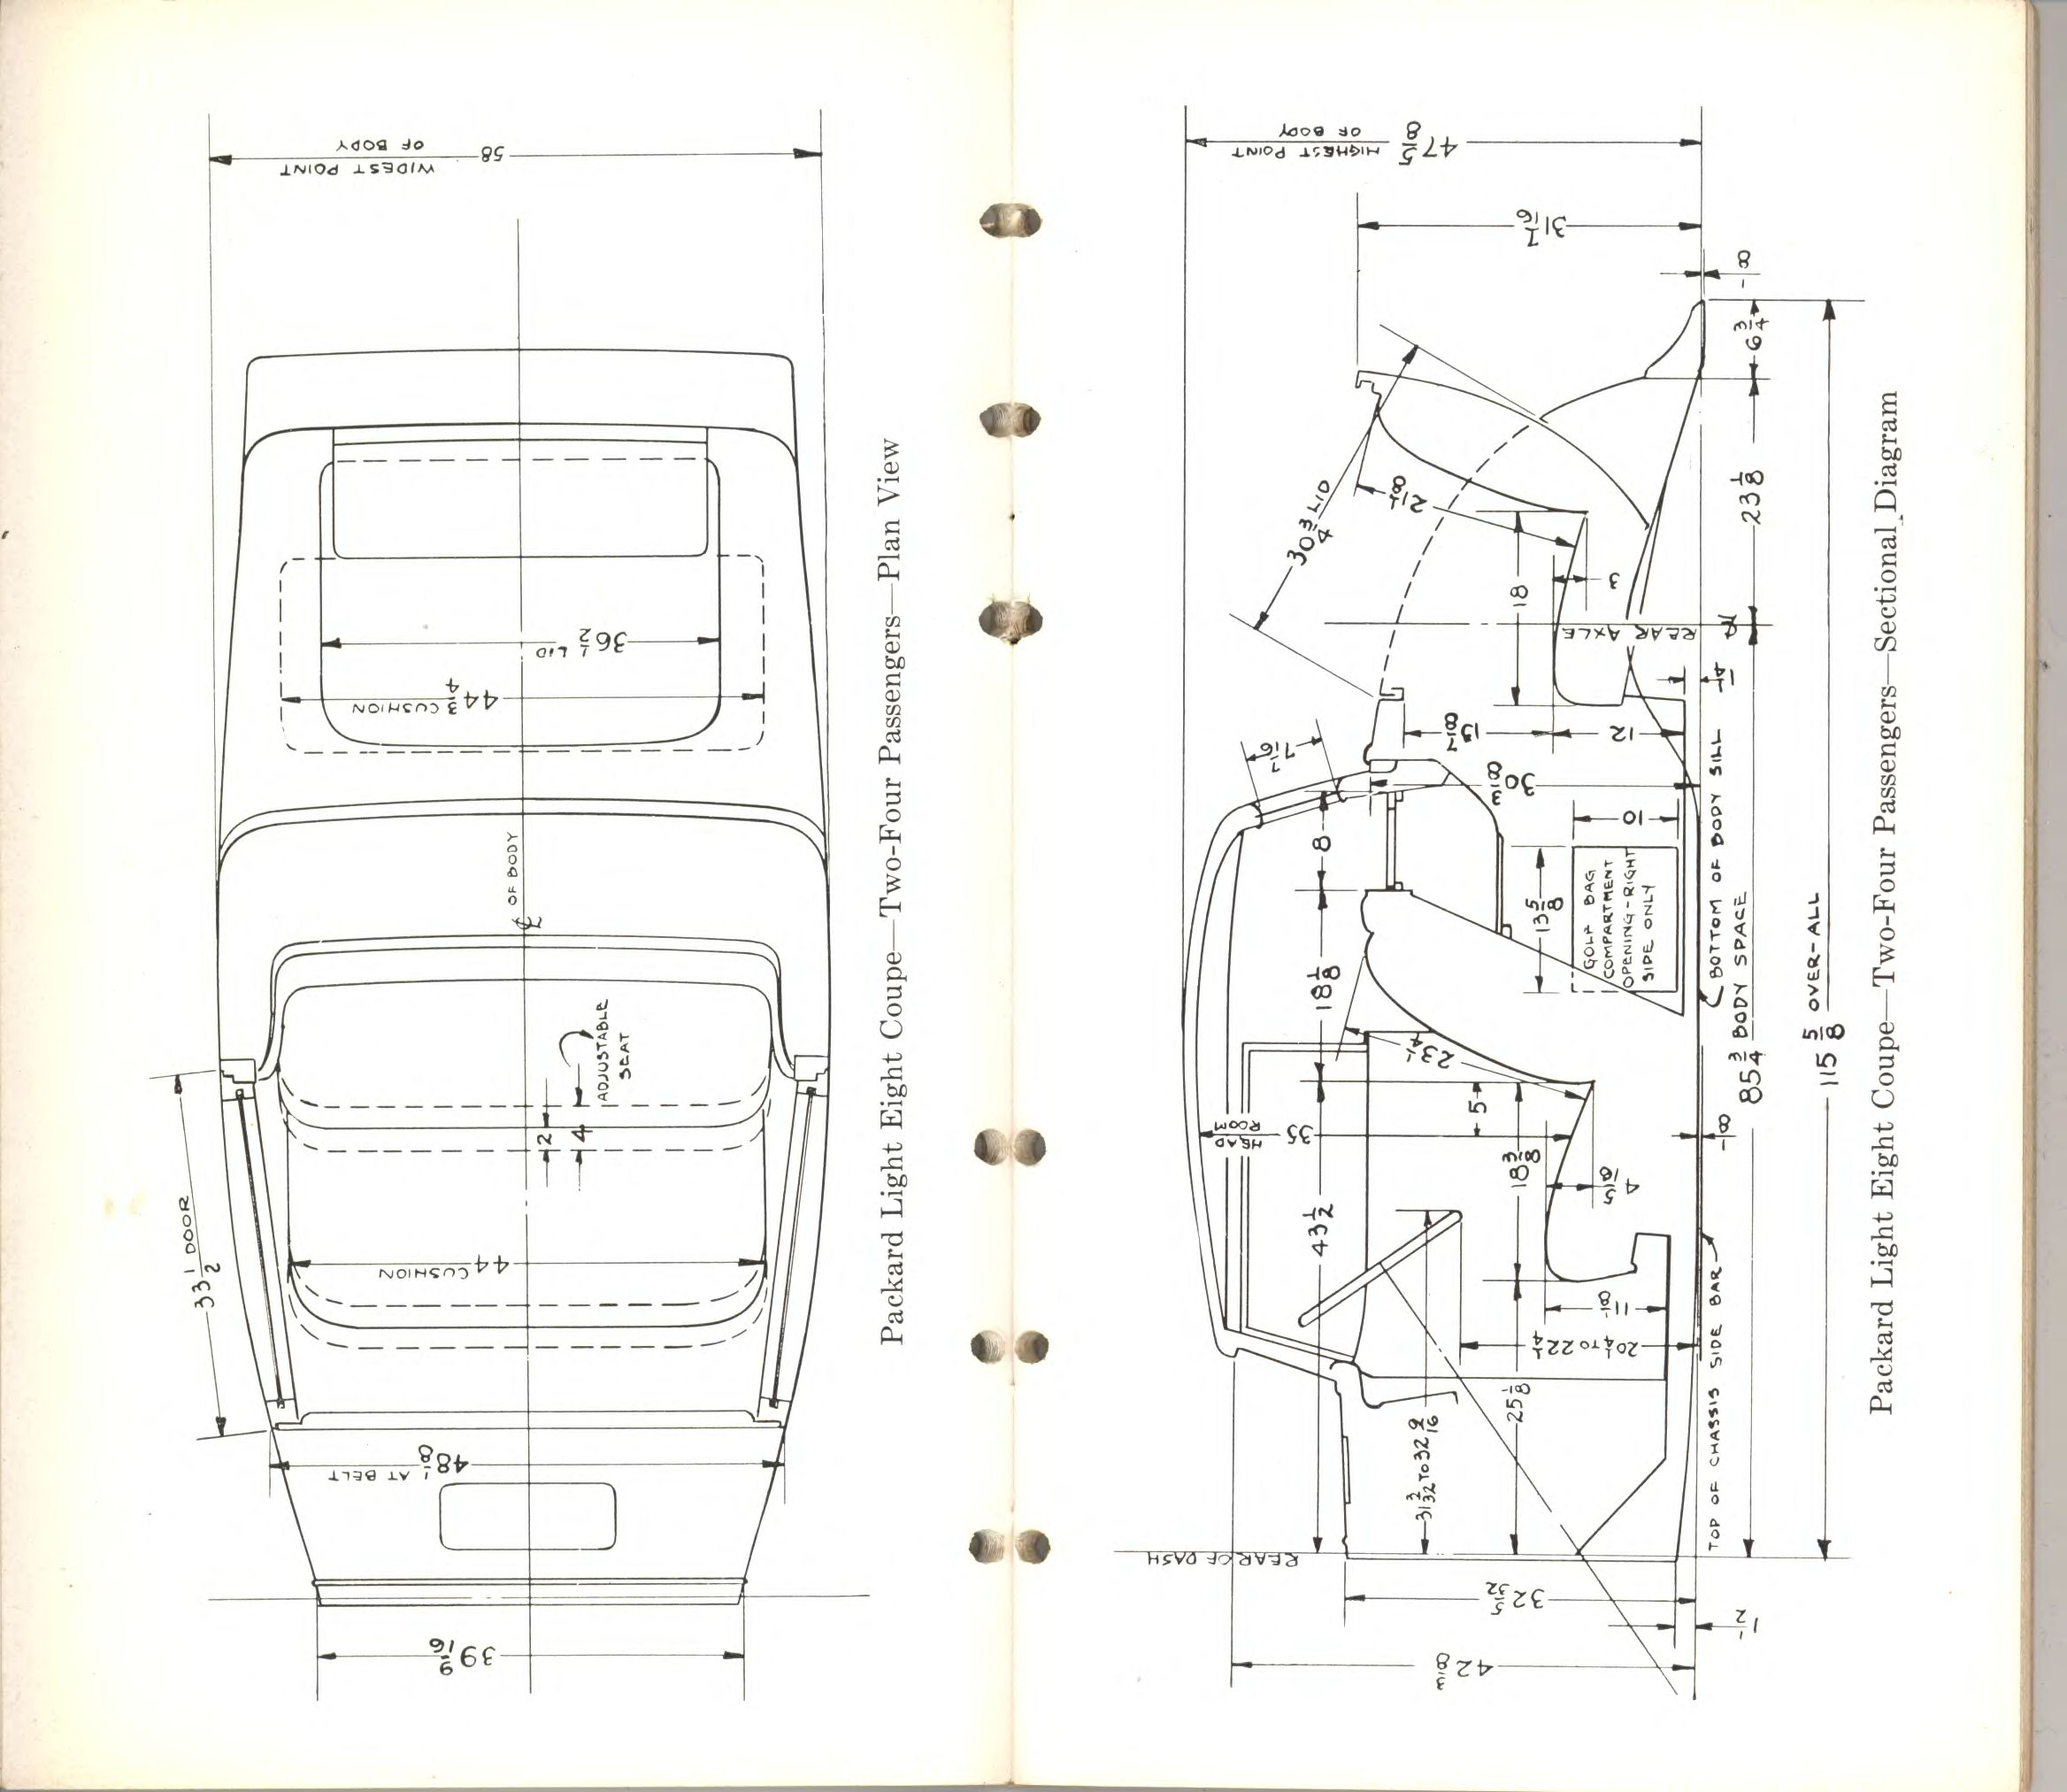 1932 Packard Data Book-22-23